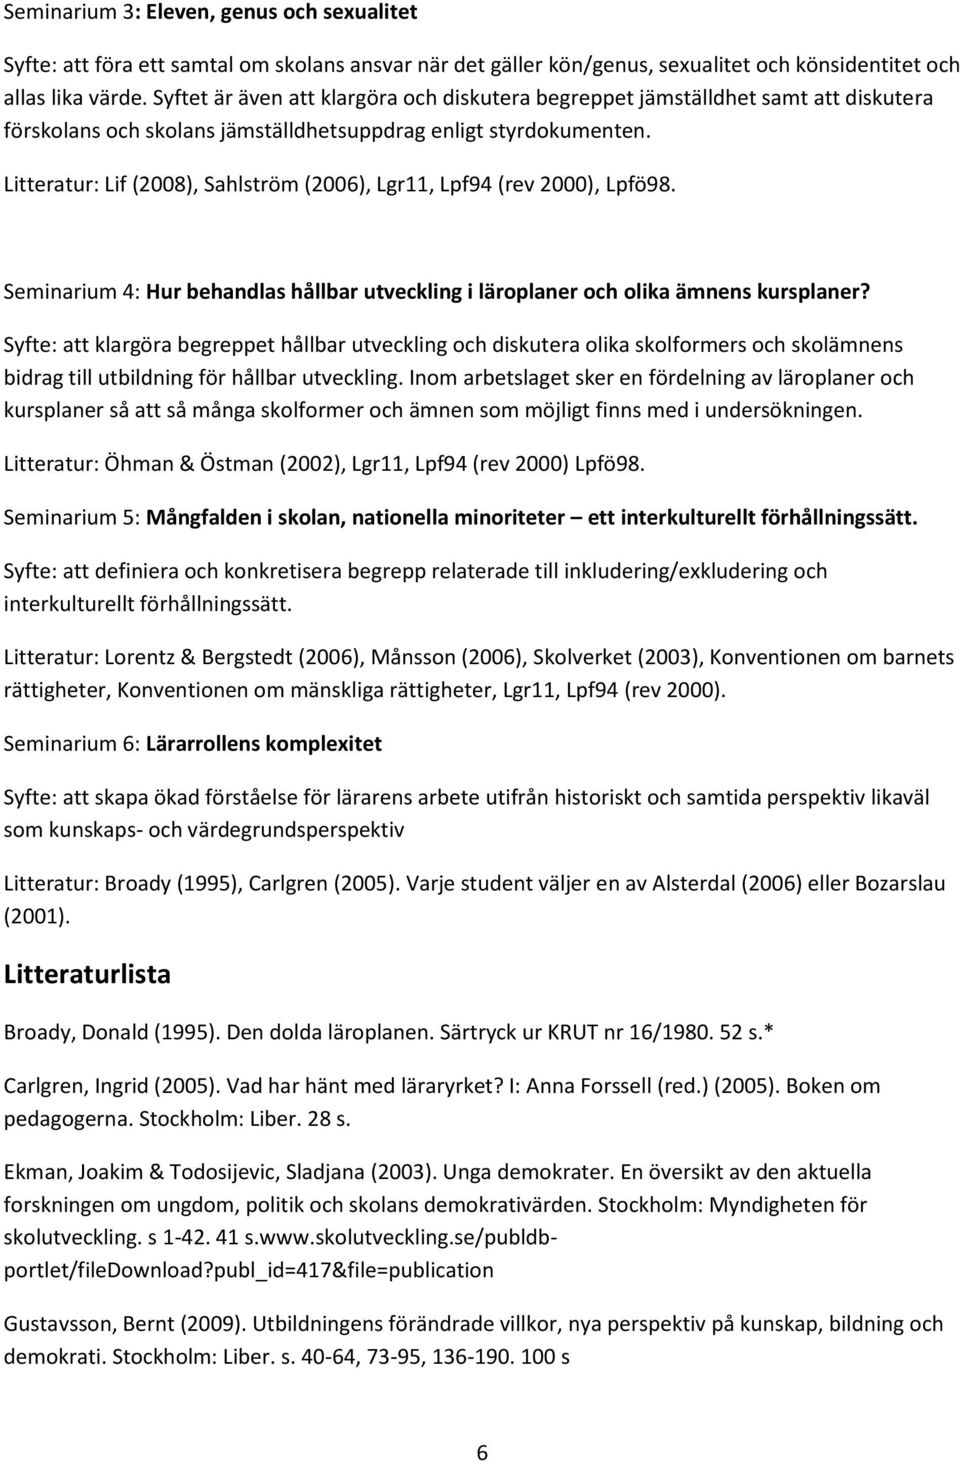 Litteratur: Lif (2008), Sahlström (2006), Lgr11, Lpf94 (rev 2000), Lpfö98. Seminarium 4: Hur behandlas hållbar utveckling i läroplaner och olika ämnens kursplaner?